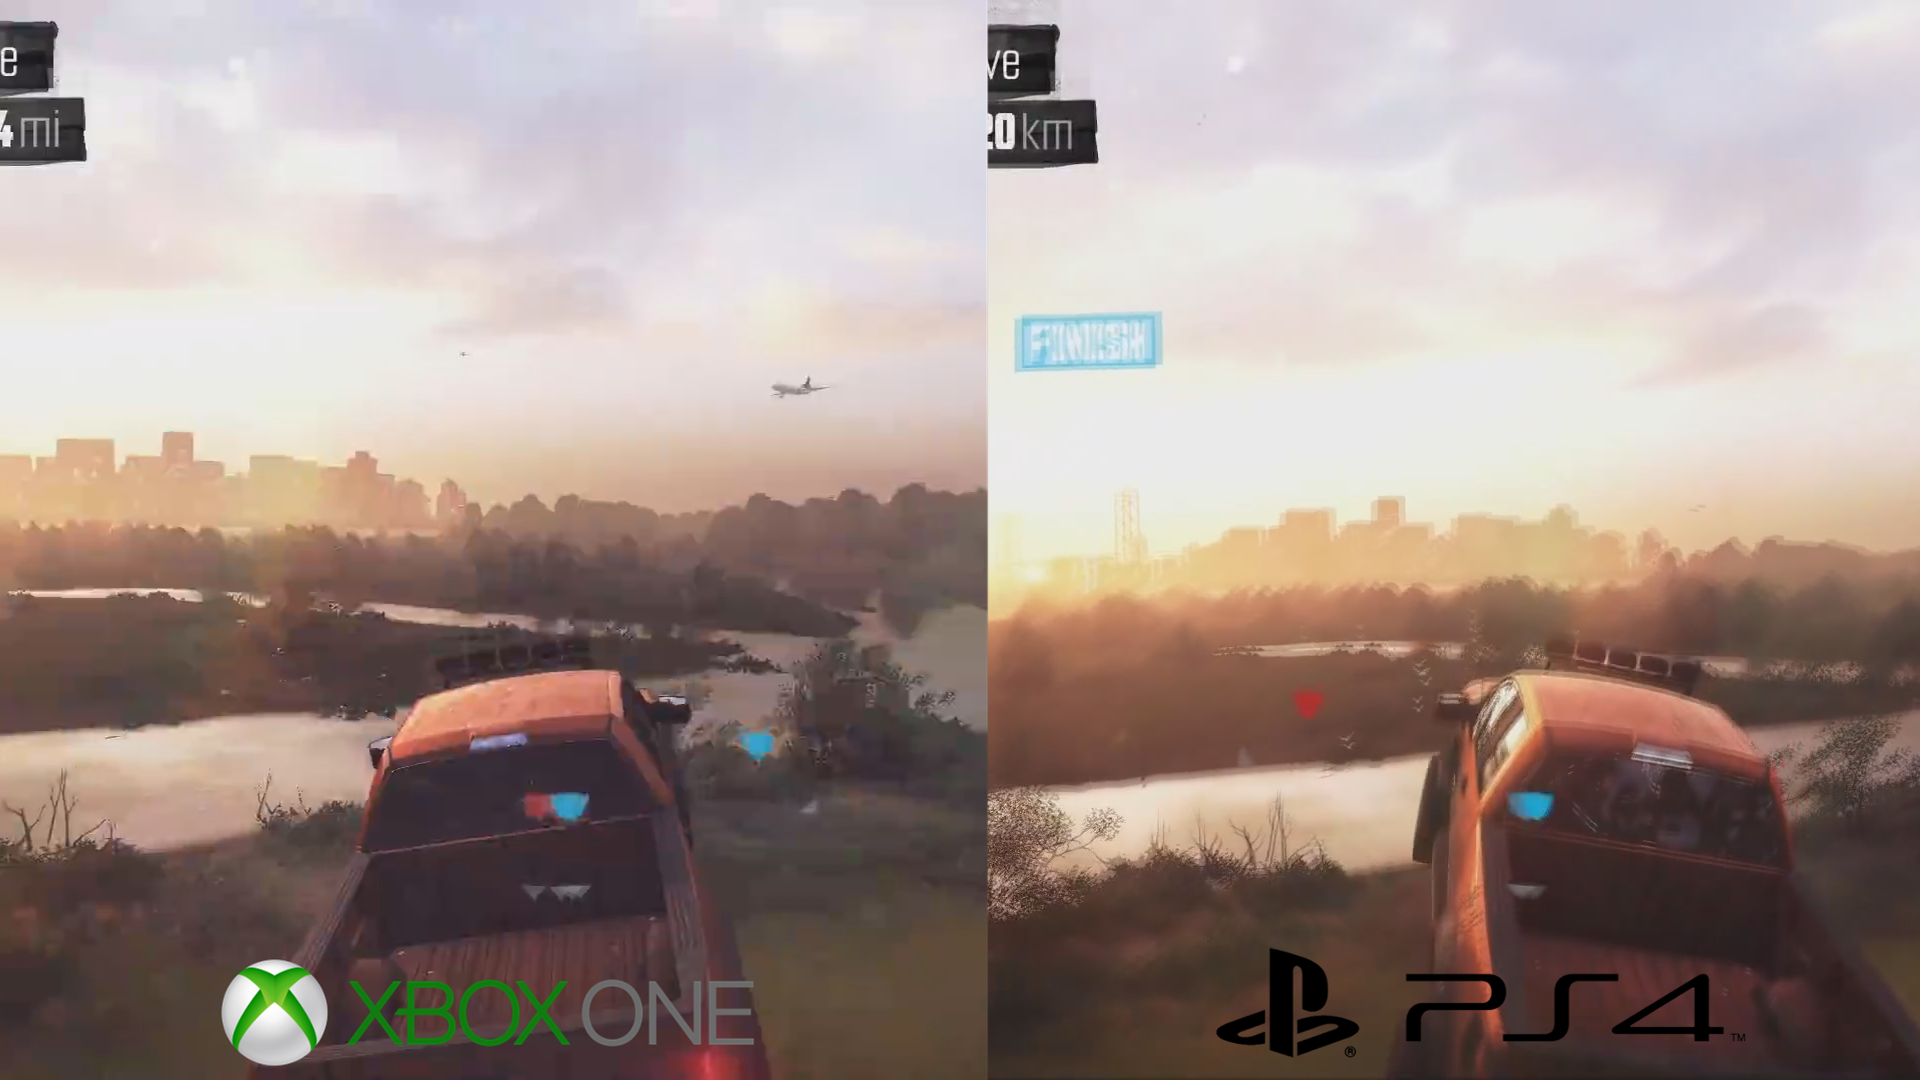 The Crew PS4 Versus Xbox One